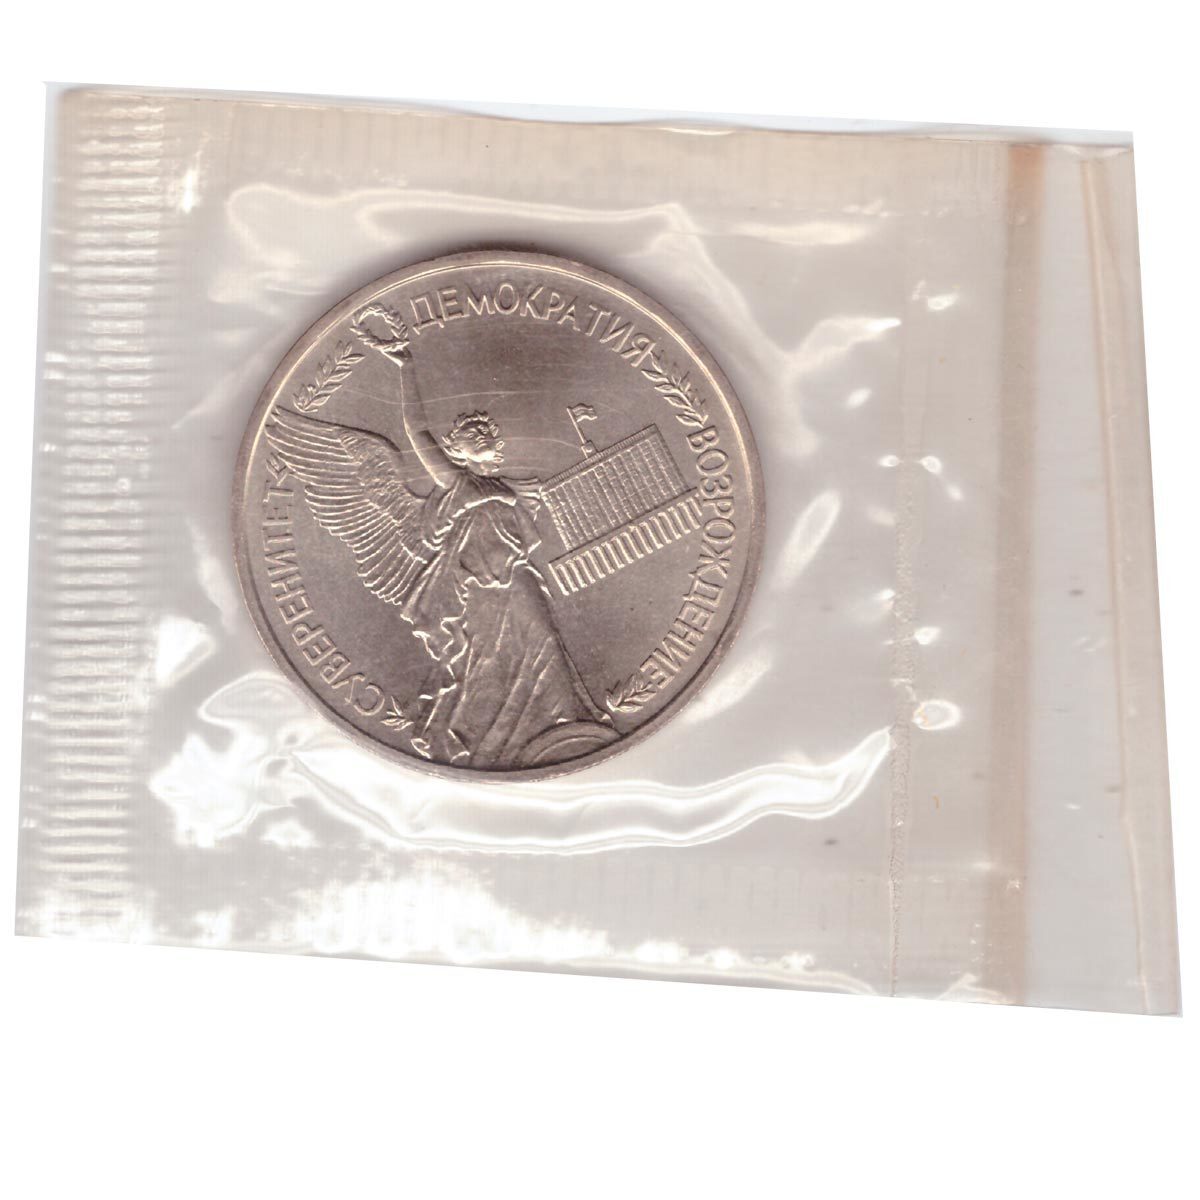 Серебряная монета независимость демократия суверенитет. Монета 1992 года 1 рубль цена суверенитет демократия Возрождение.